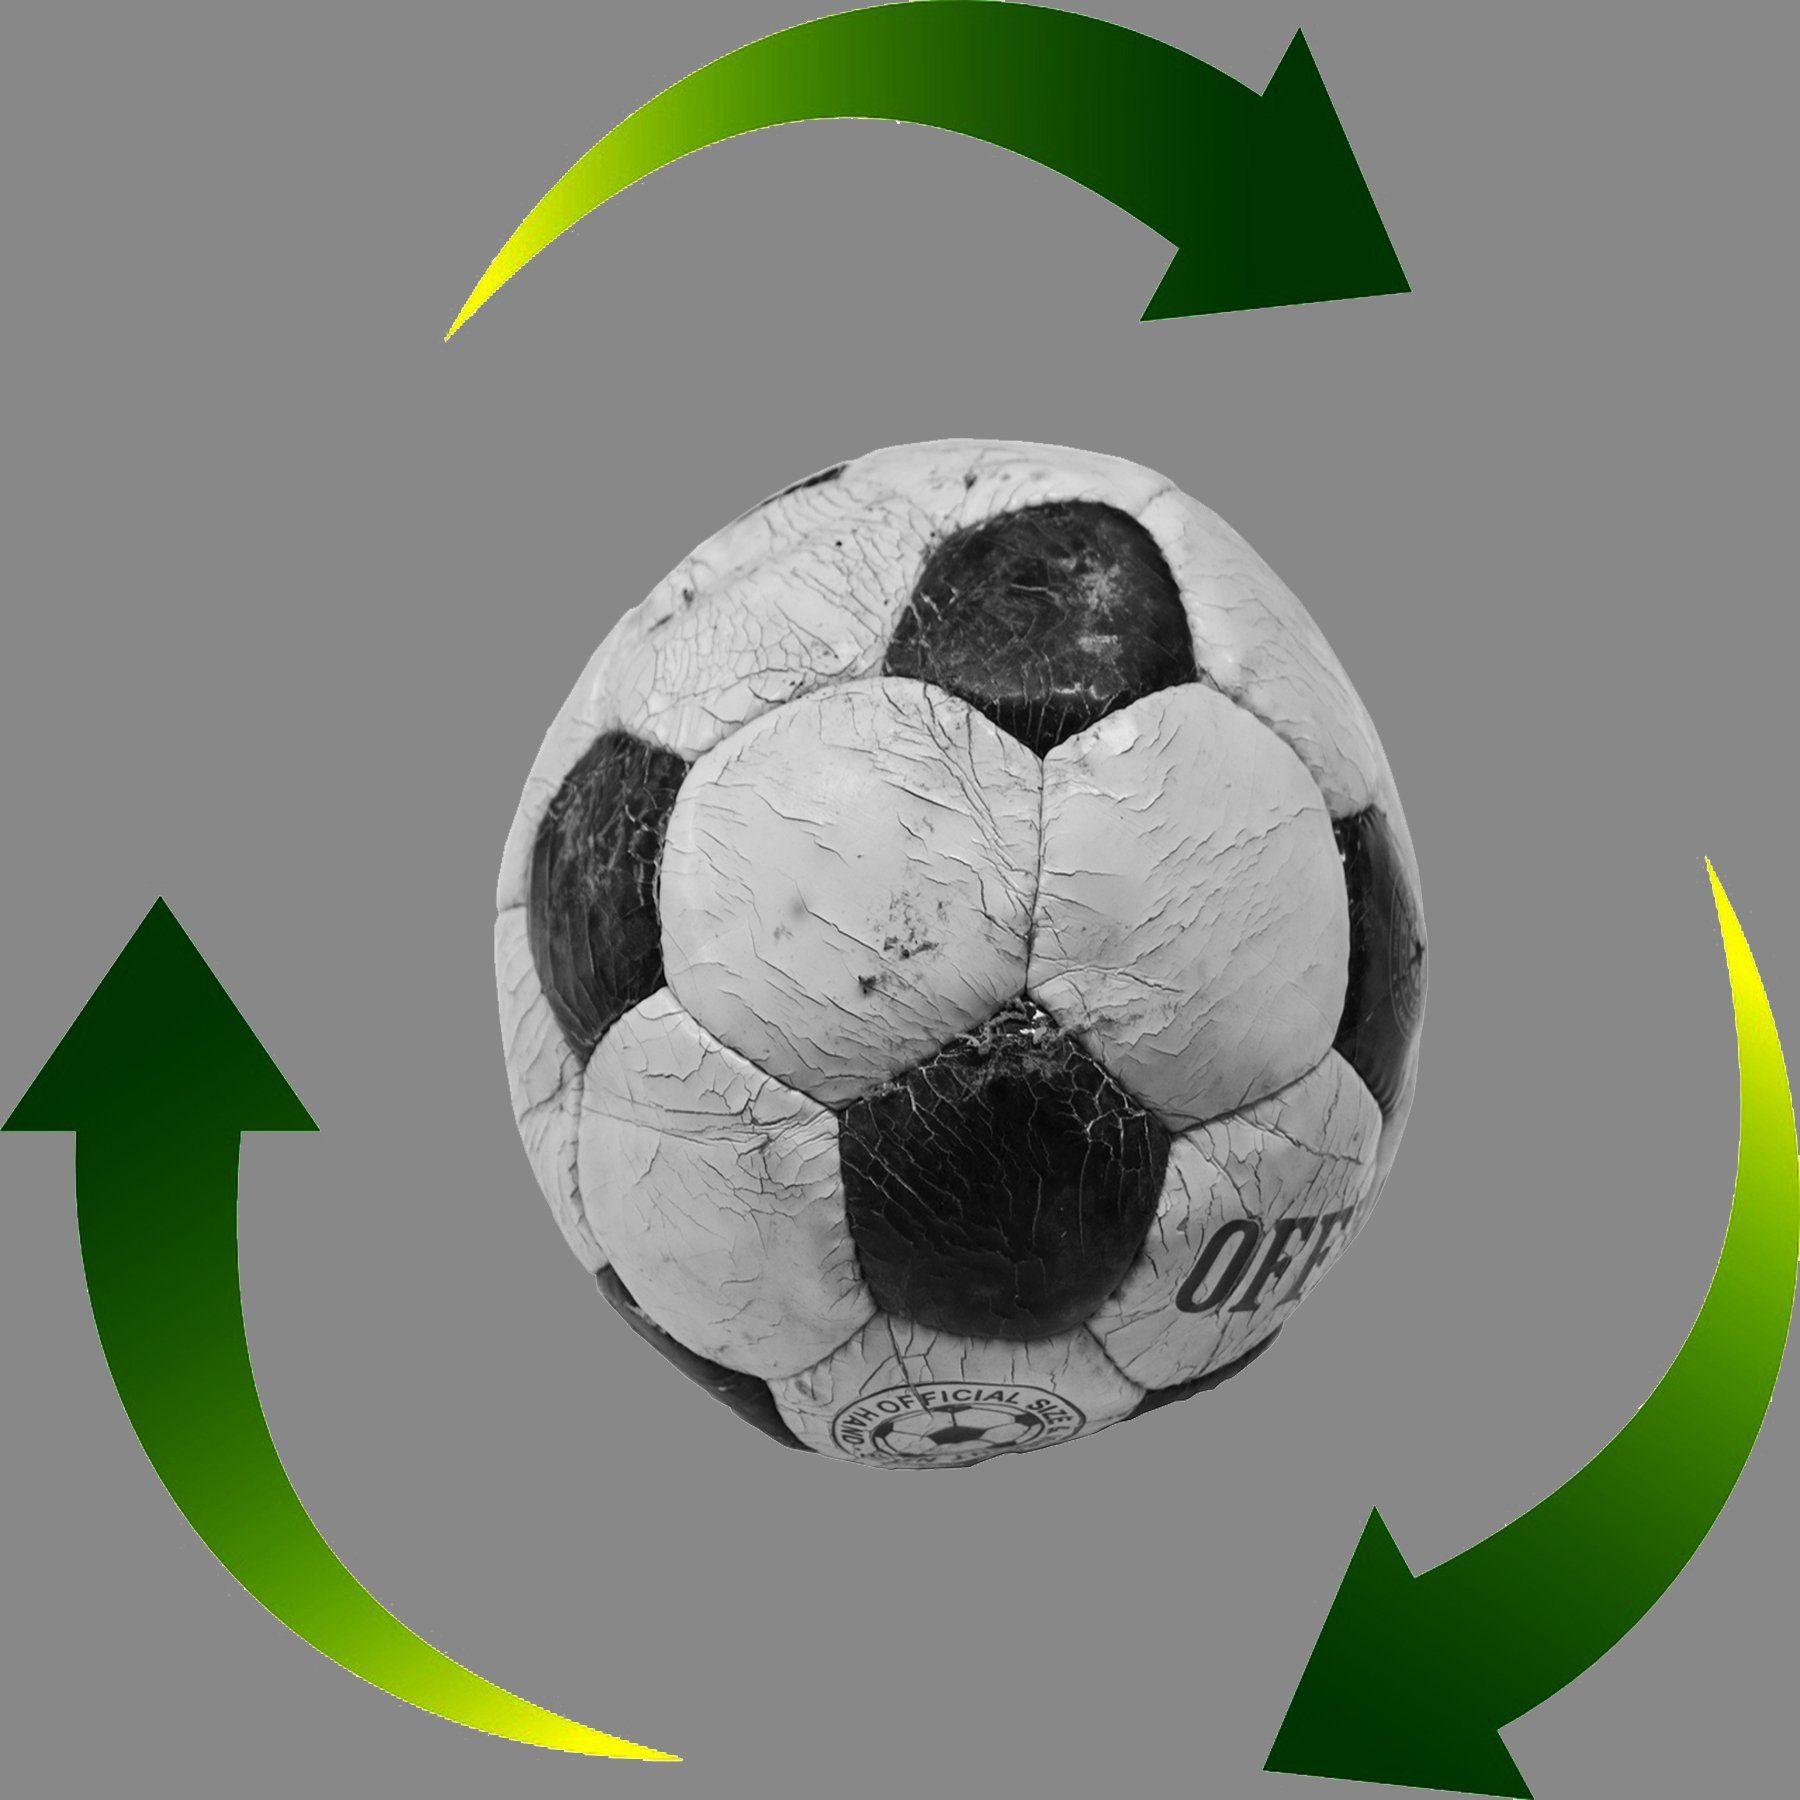 pallone calcio, riciclo, ecosostenibile, economia circolare, plastica, rifiuto